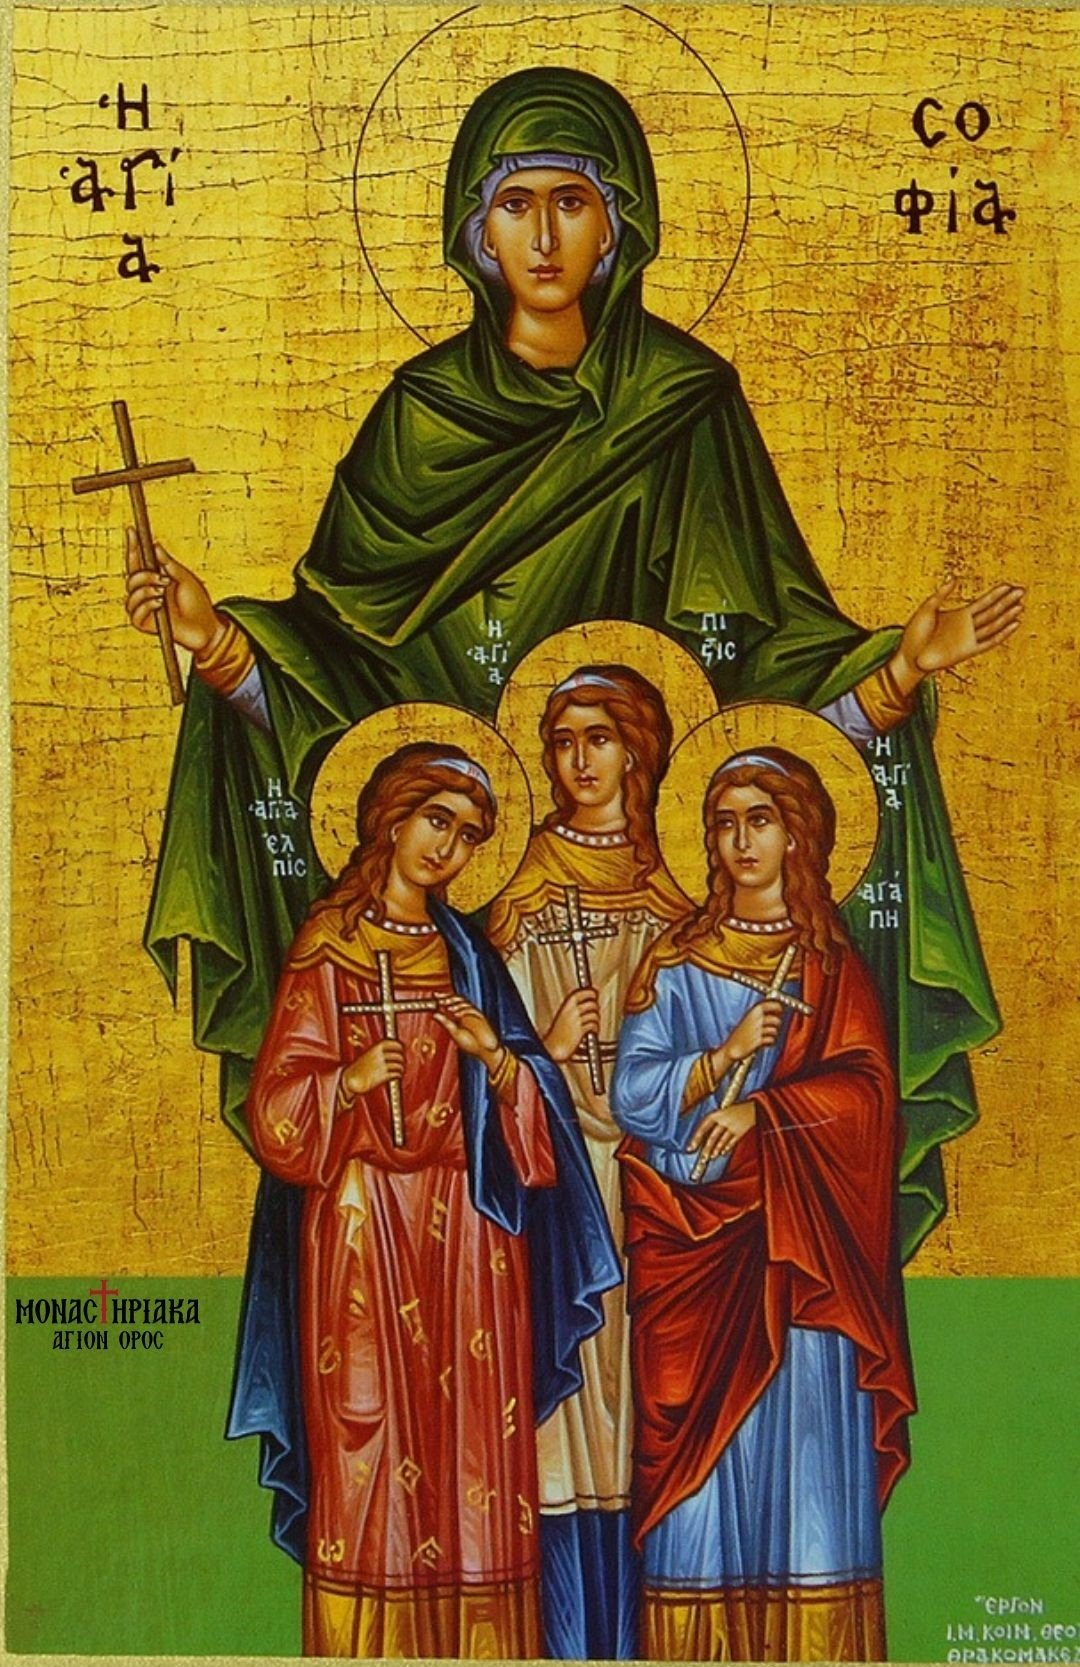 Saint Sophia, the mother of Saint Pisti, Saint Elpida, and Saint Agape